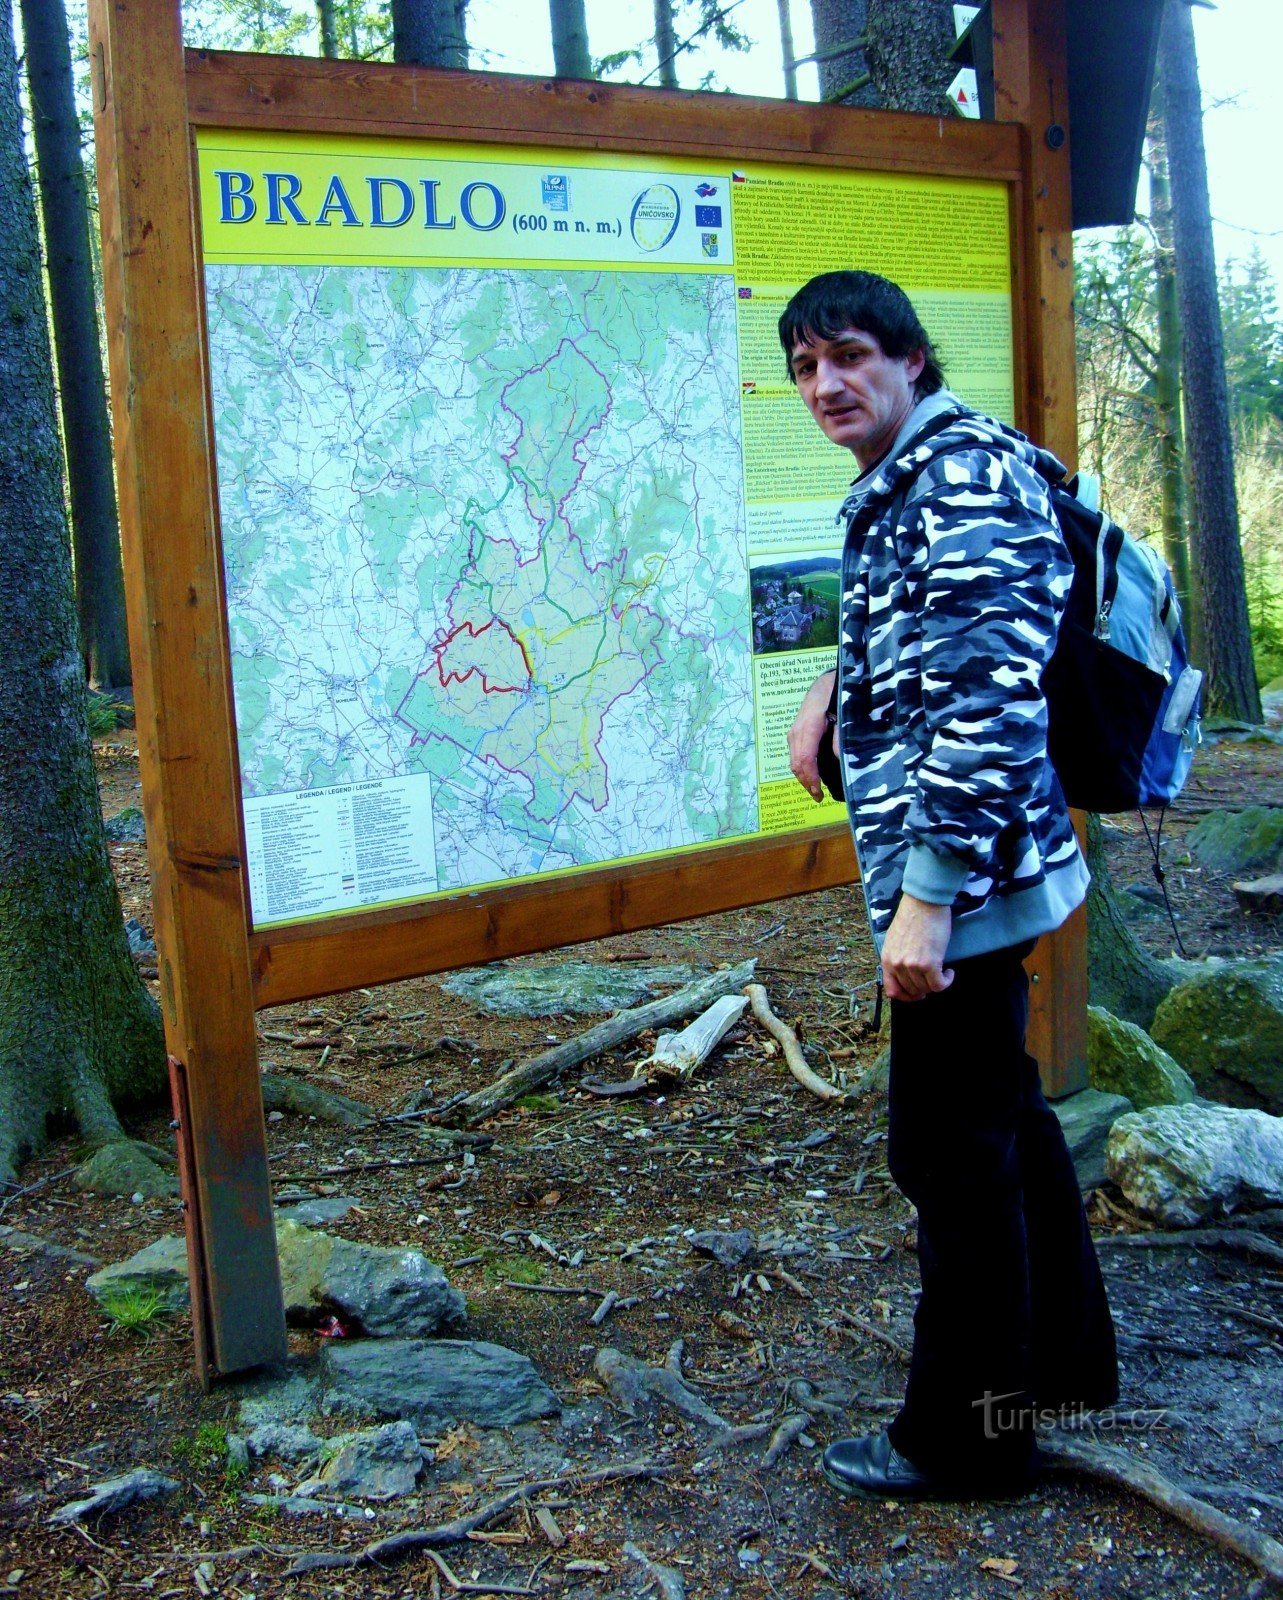 Excursão via Bradlo a Brníček